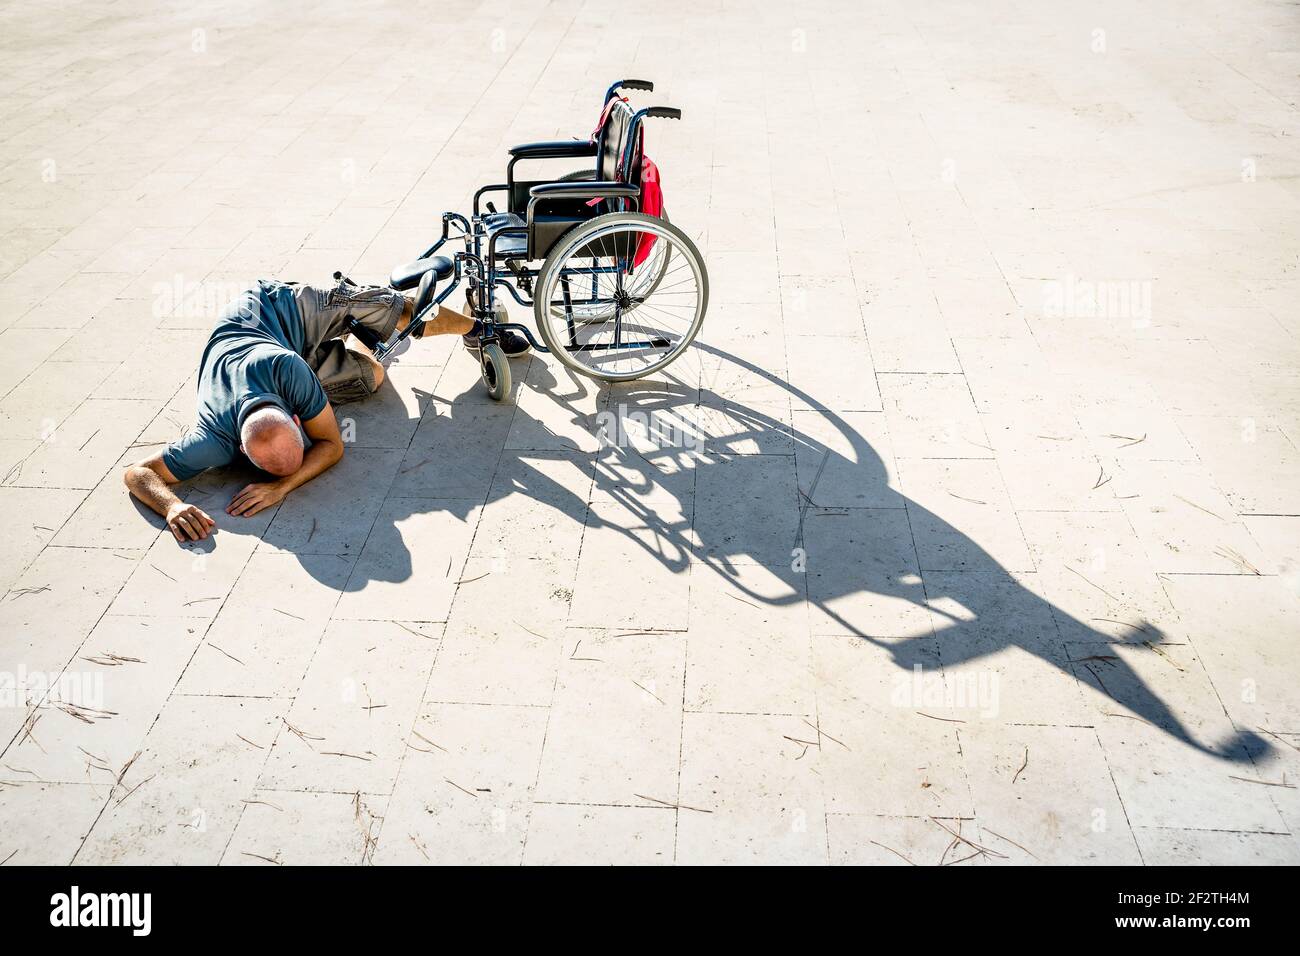 Behinderter Mann mit Handicap, der einen Unfall mit Rollstuhl hatte - Behinderung Konzept mit ohnmächtigen unhelfenden Person liegt auf der Boden Stockfoto